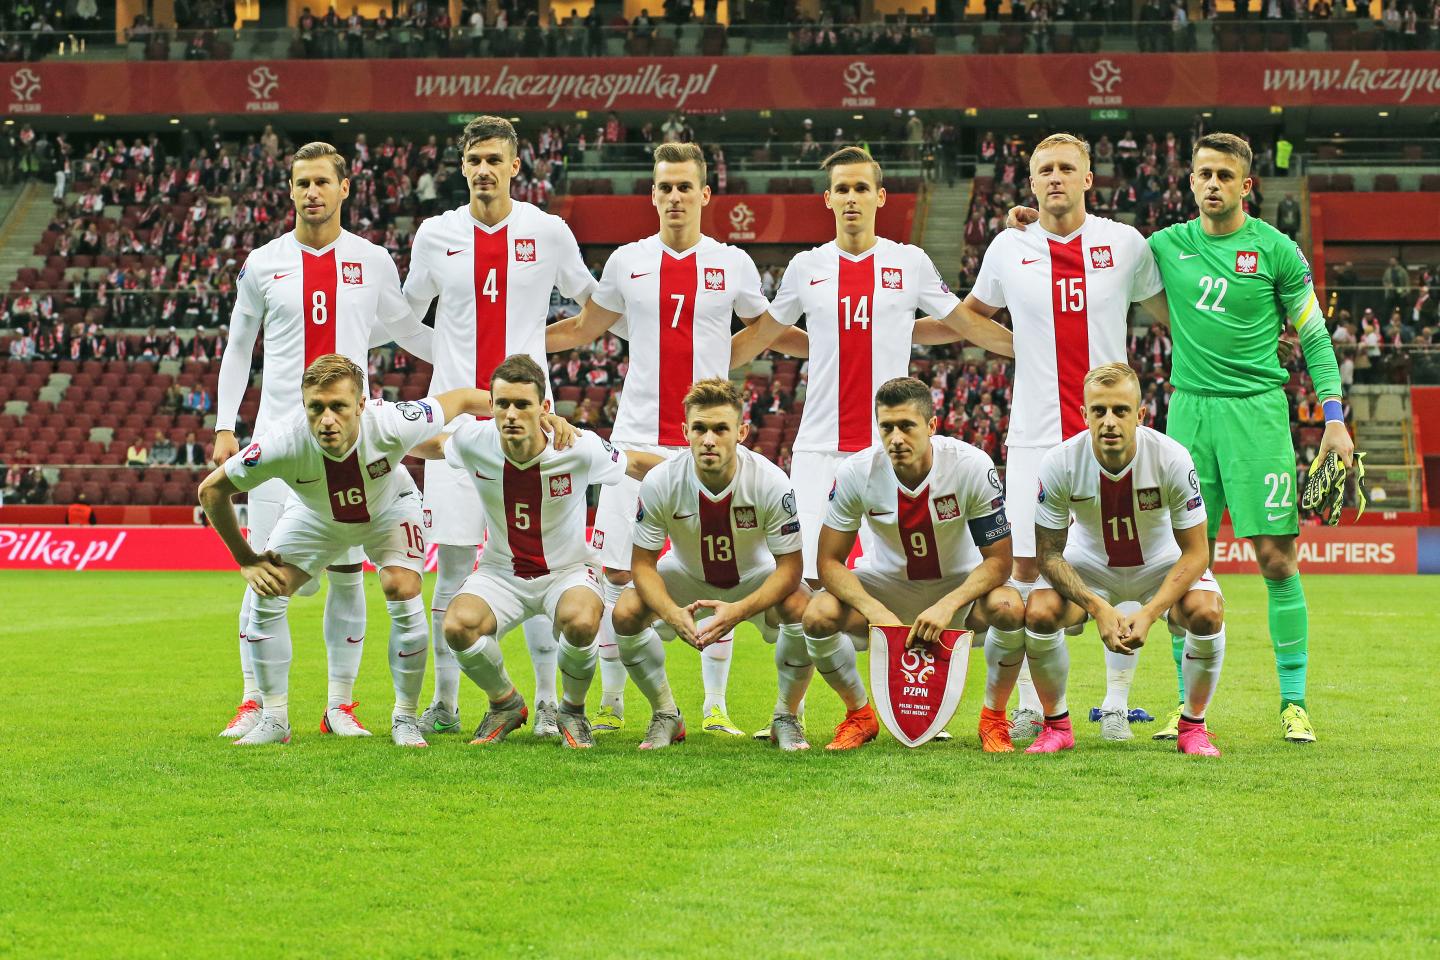 Reprezentacja Polski (w białych strojach z pionowym czerwonym pasem pośrodku) przed meczem z Gibraltarem. Bramkarz Łukasz Fabiański ubrany w zielony strój.